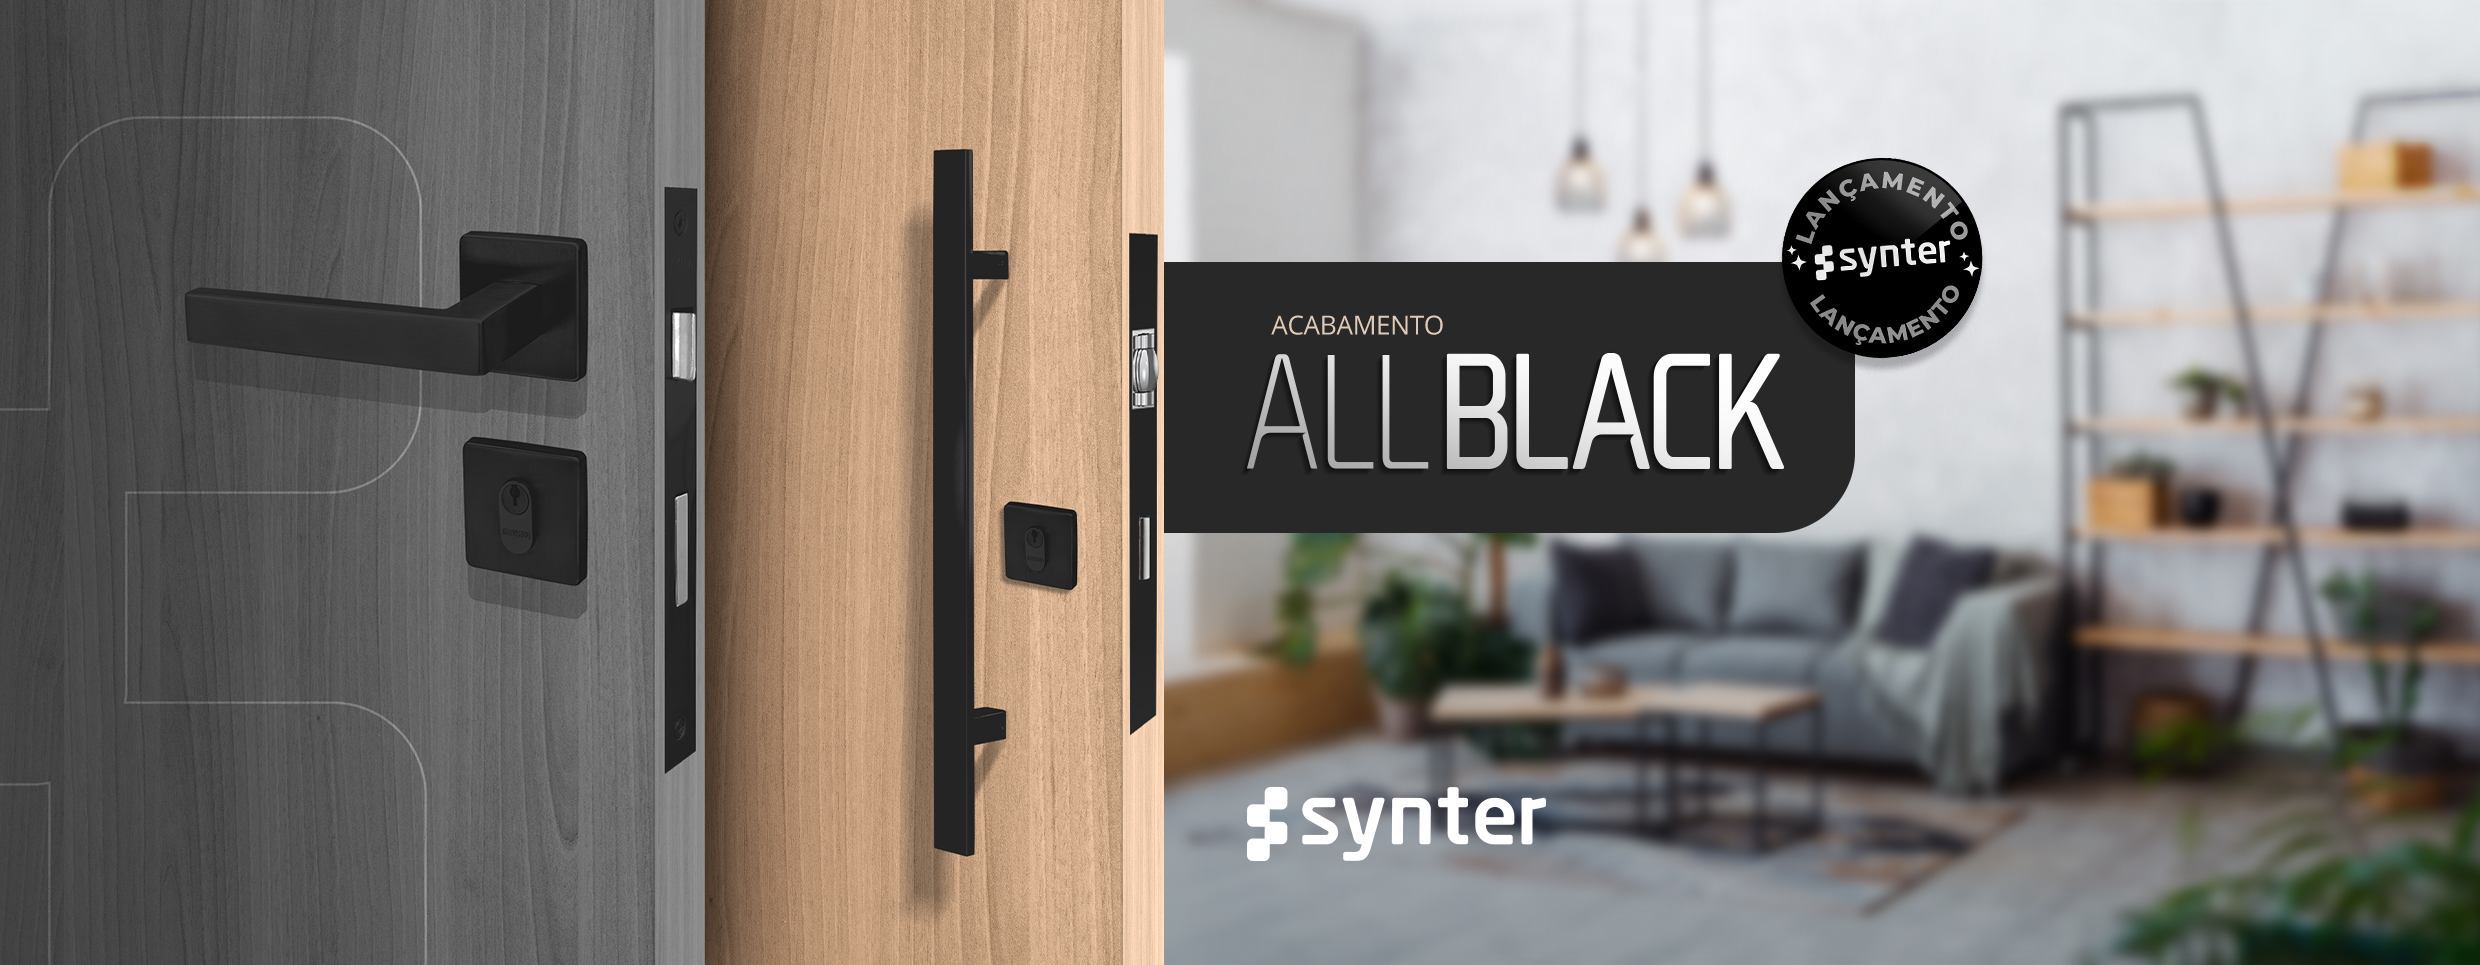 Imagem - O Estilo Industrial ganha destaque na decoração e inspira o novo acabamento da Synter: All Black